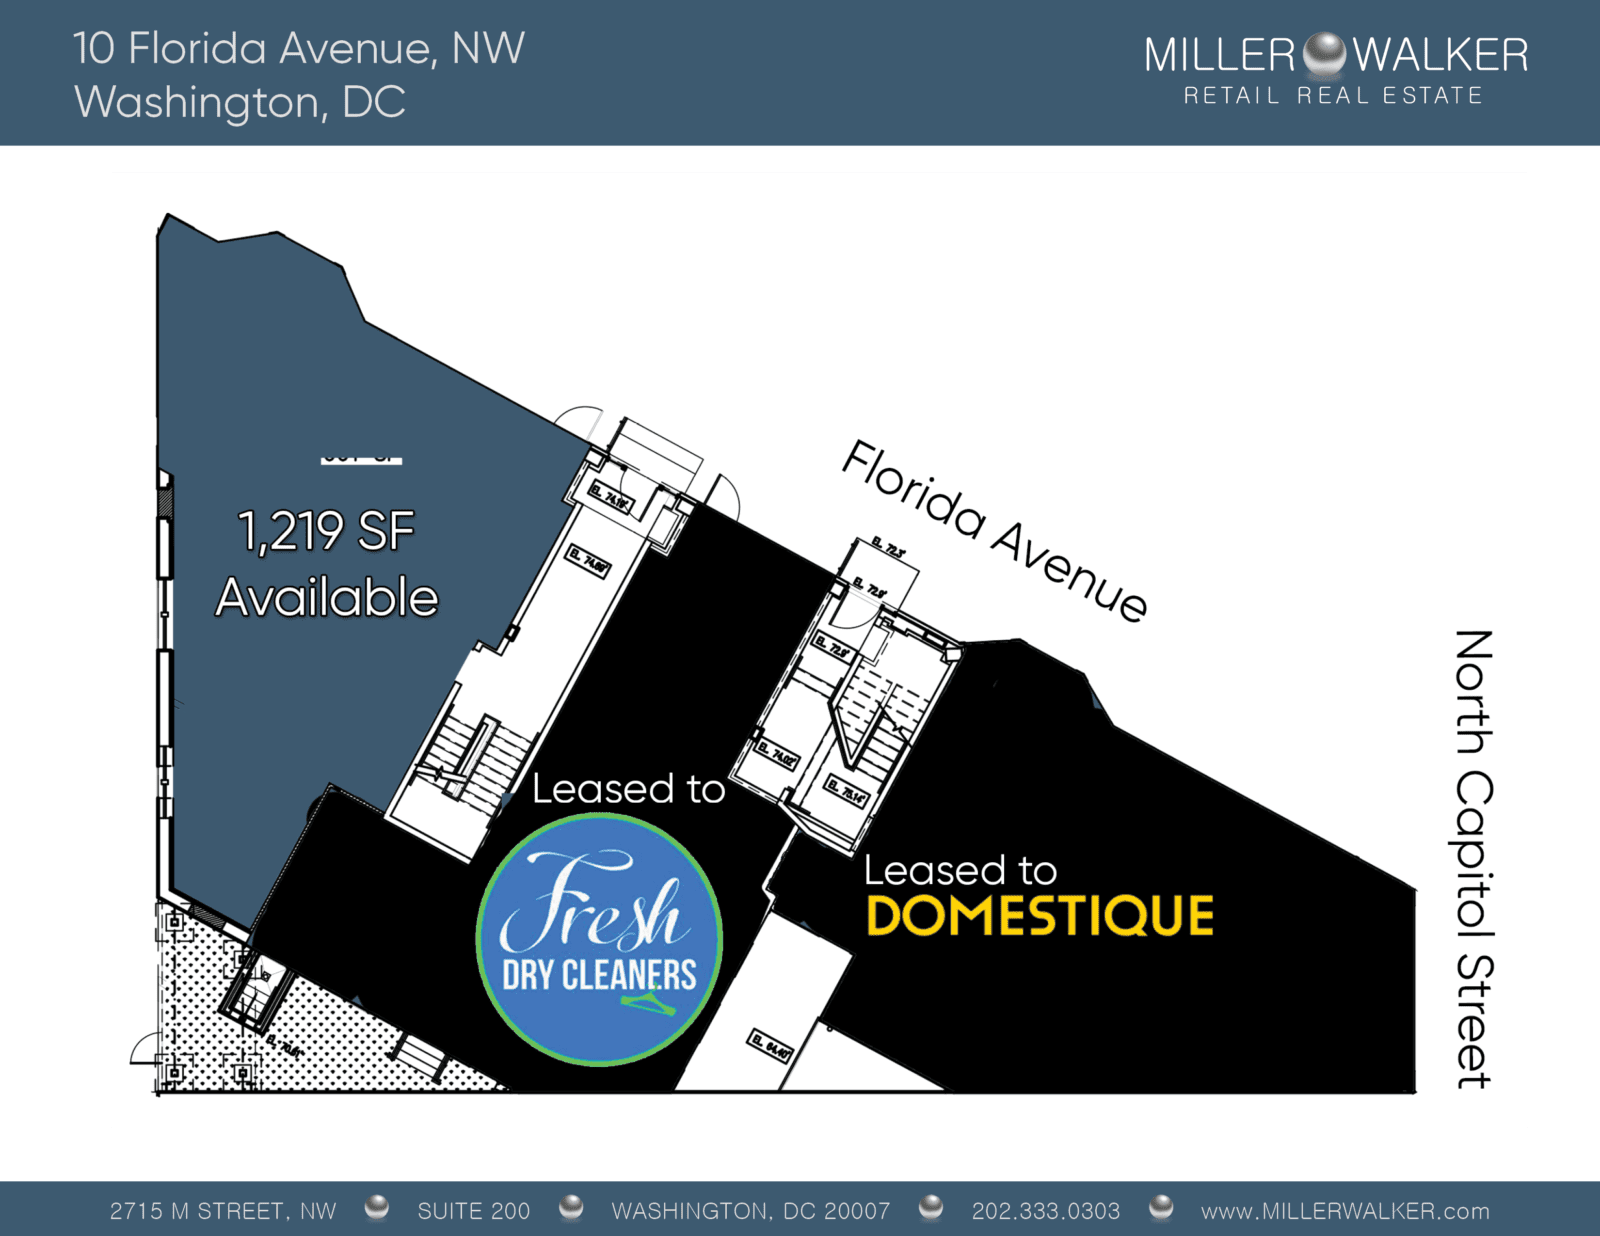 the truxton 10 florida avenue nw retail space floor plans